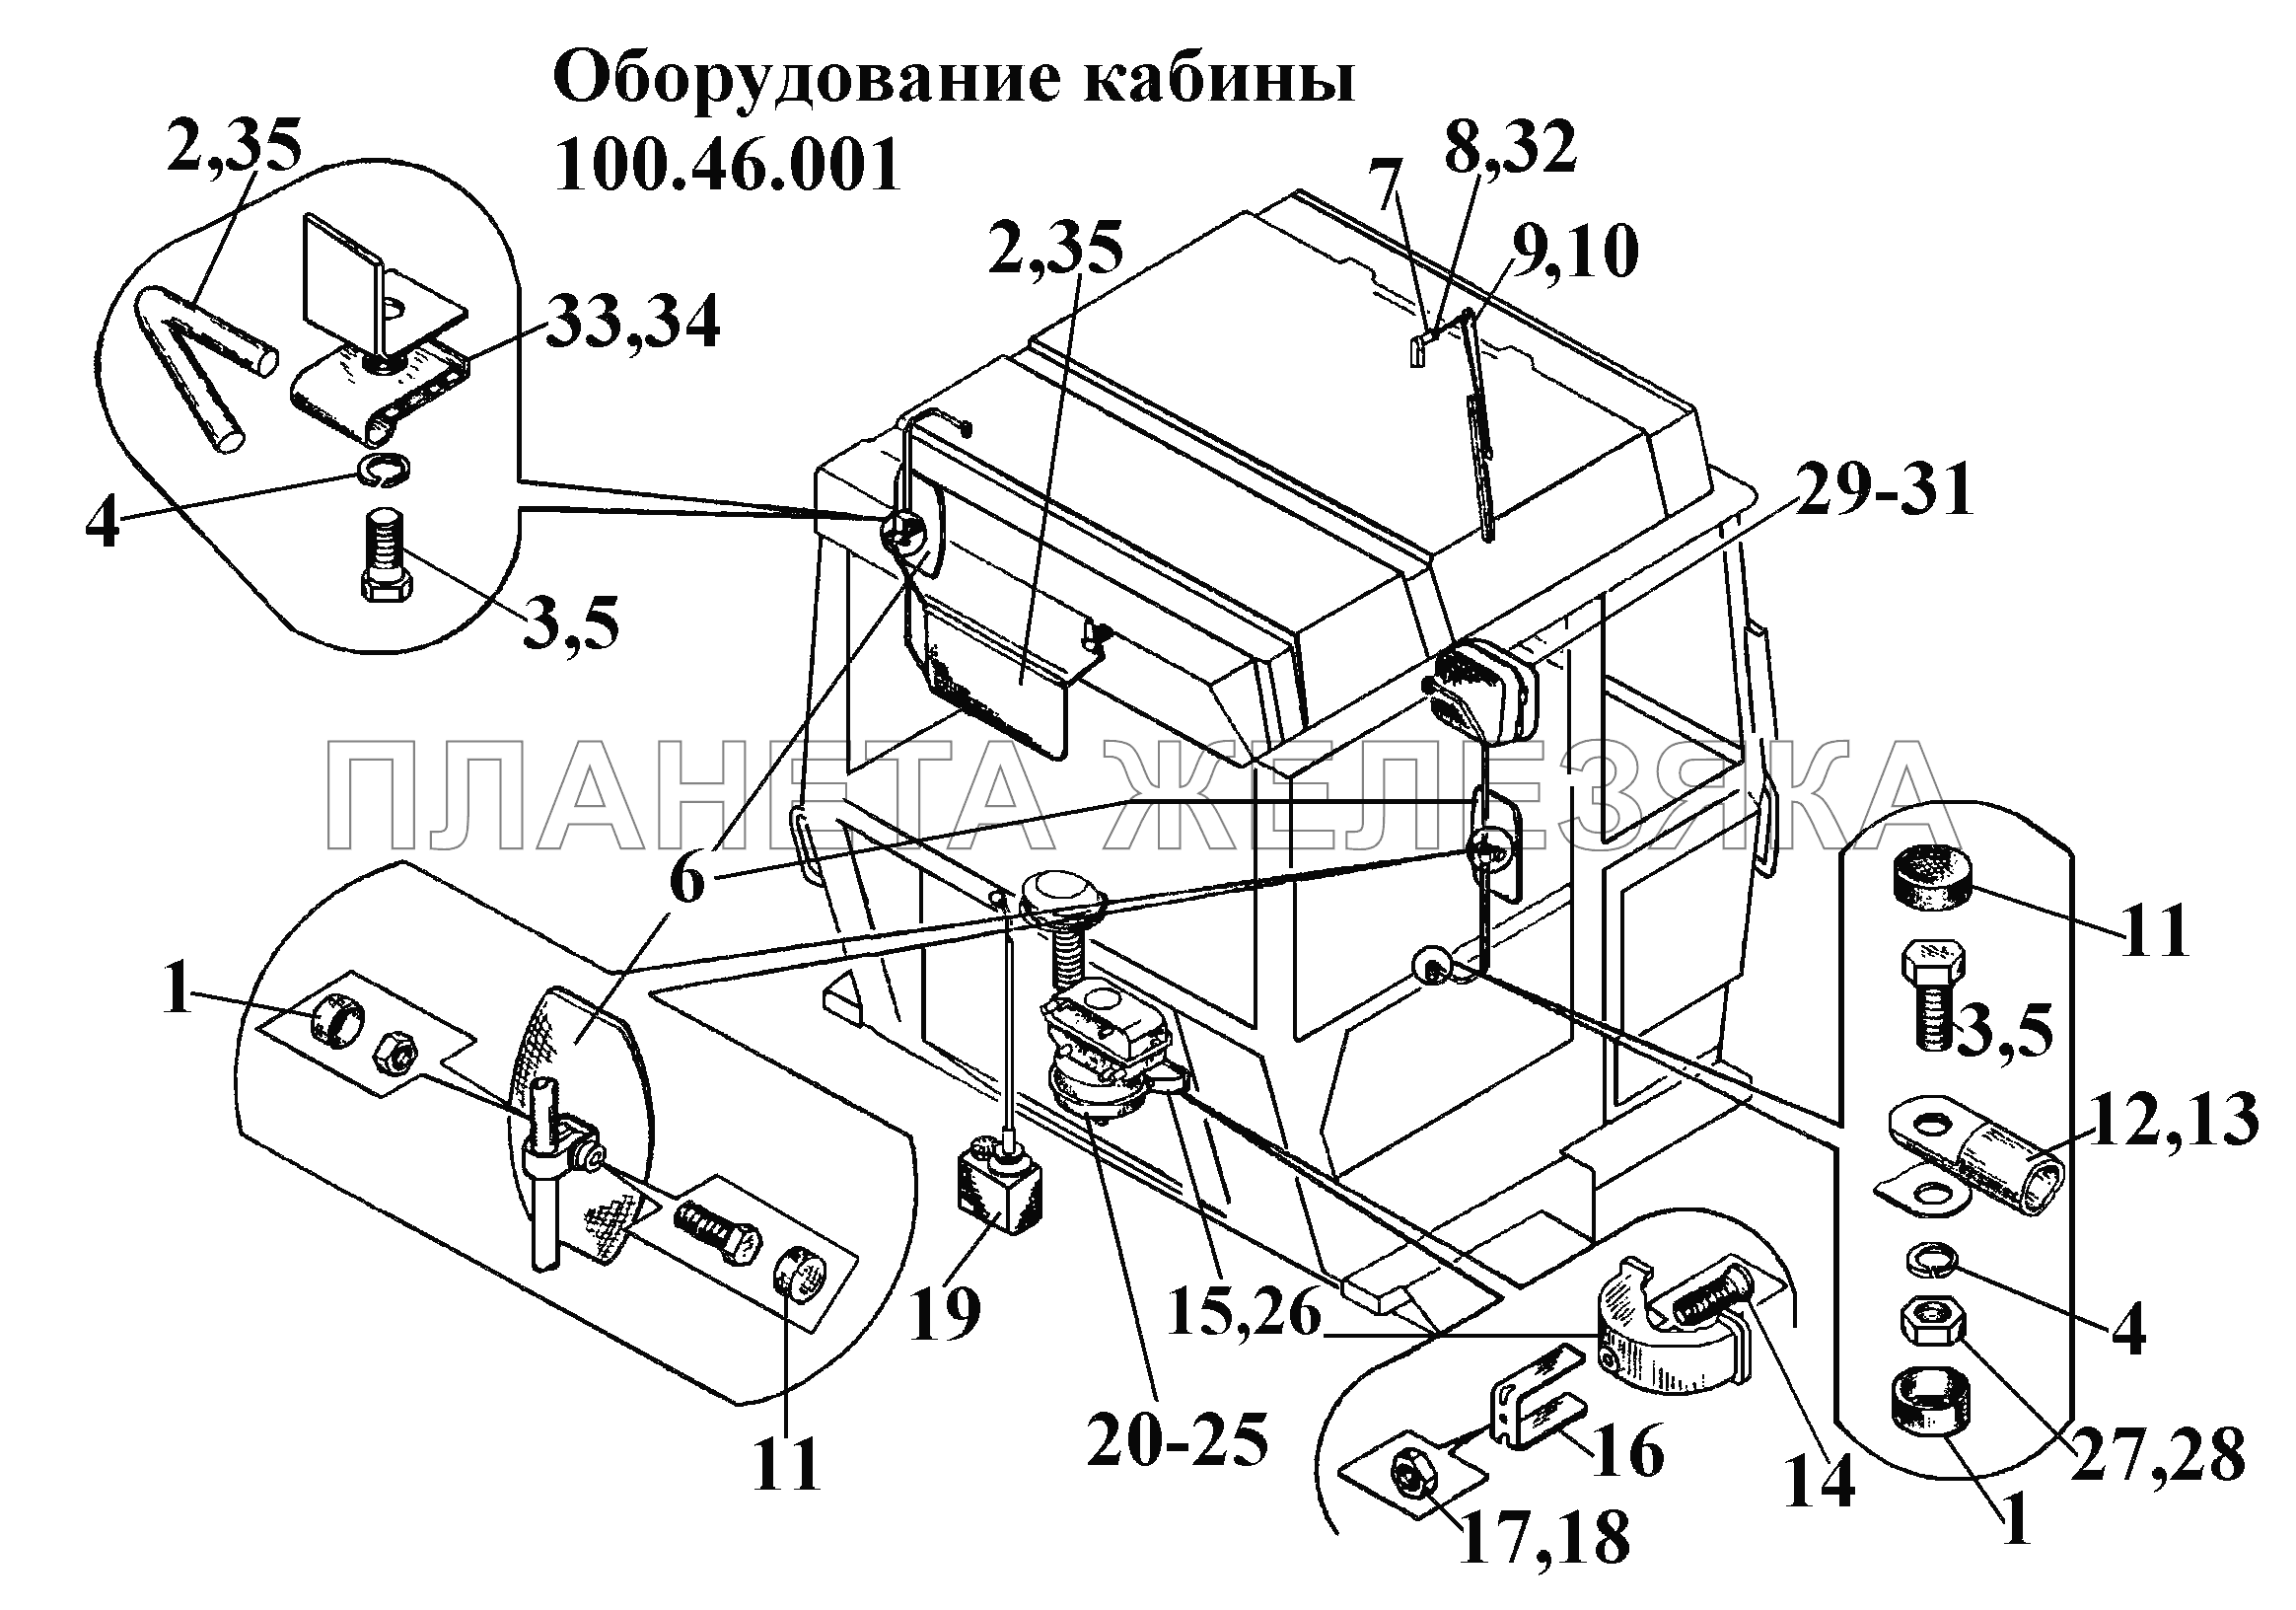 Оборудование кабины 100.46.001 ВТ-100Д